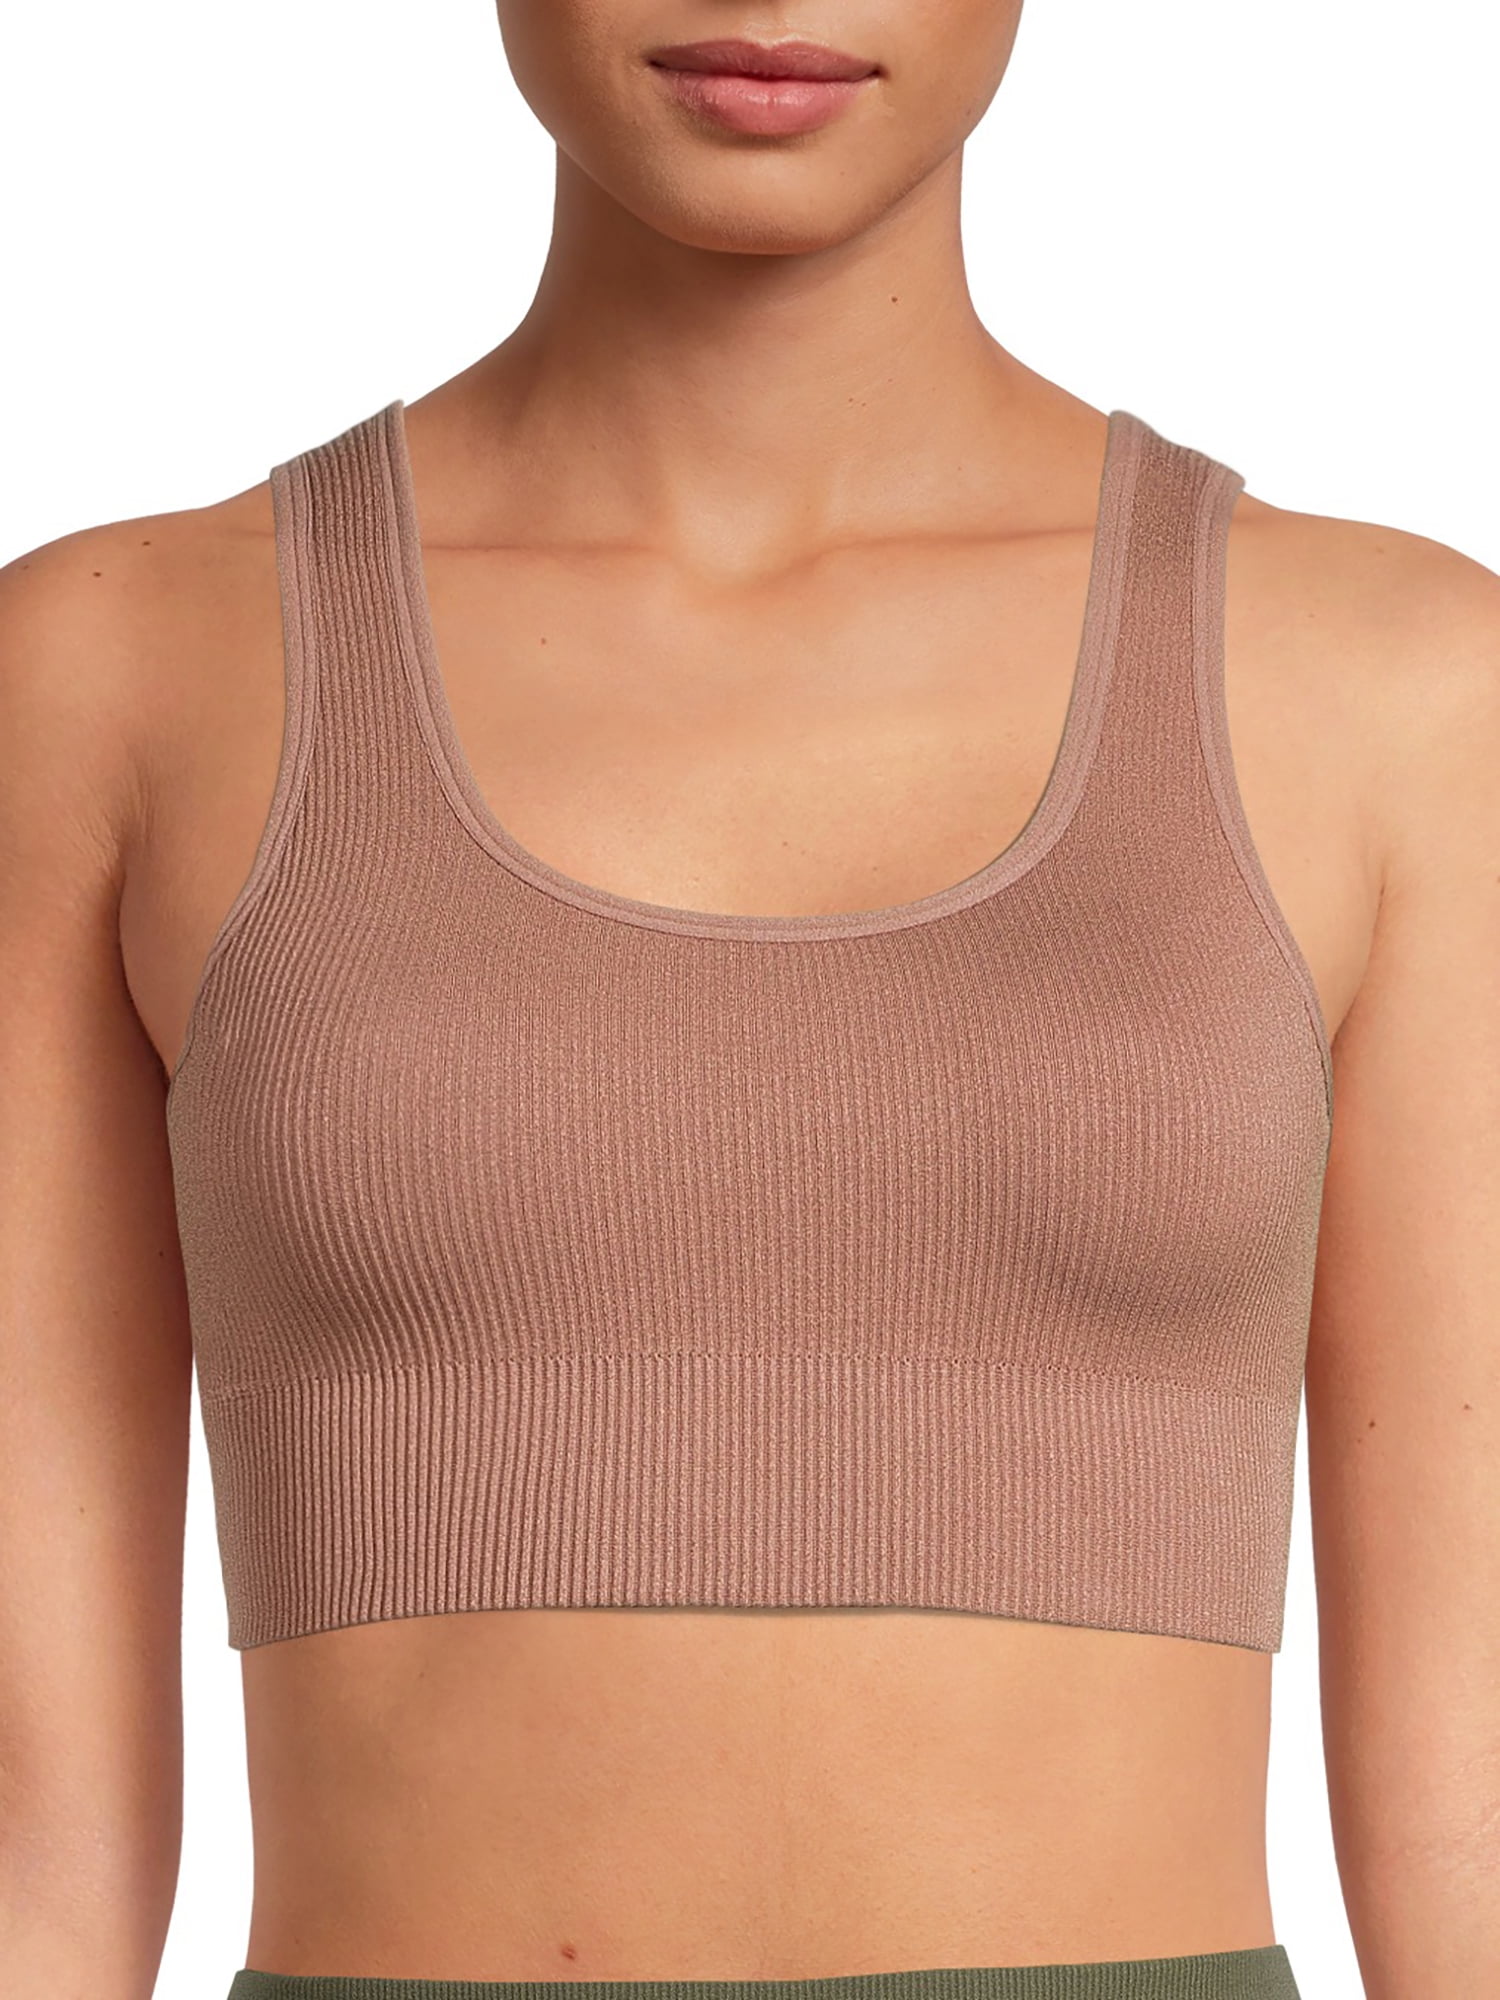 AVIA Women's Sports Bra, Purple/Multi, Large  Women's sports bras, Gym sports  bra, Compression sports bra